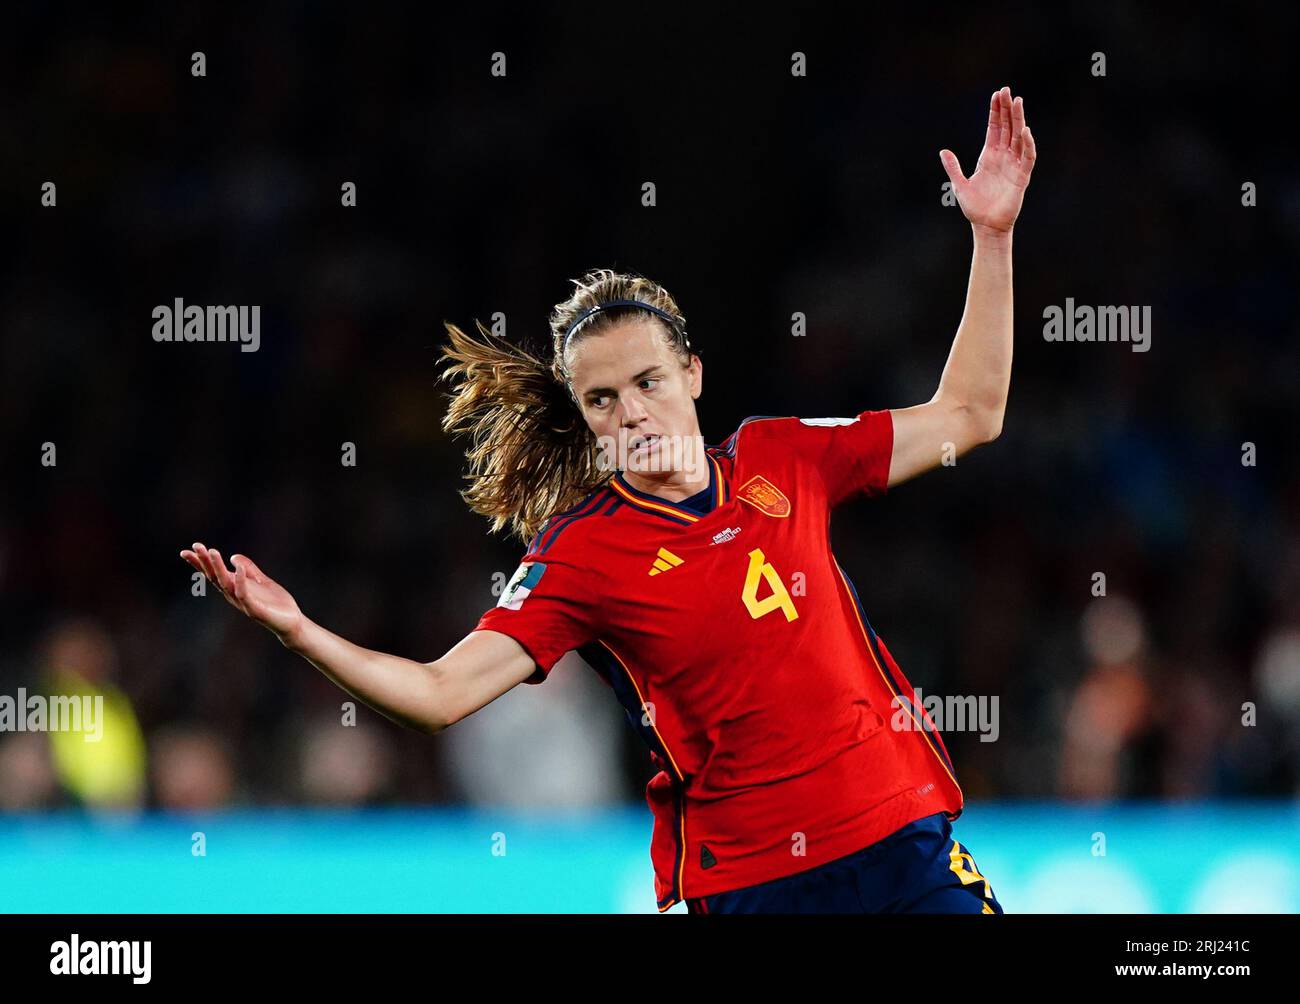 Die Spanierin Irene Paredes reagiert während des Finalspiels der FIFA-Frauen-Weltmeisterschaft im Stadion Australien, Sydney. Bilddatum: Sonntag, 20. August 2023. Stockfoto